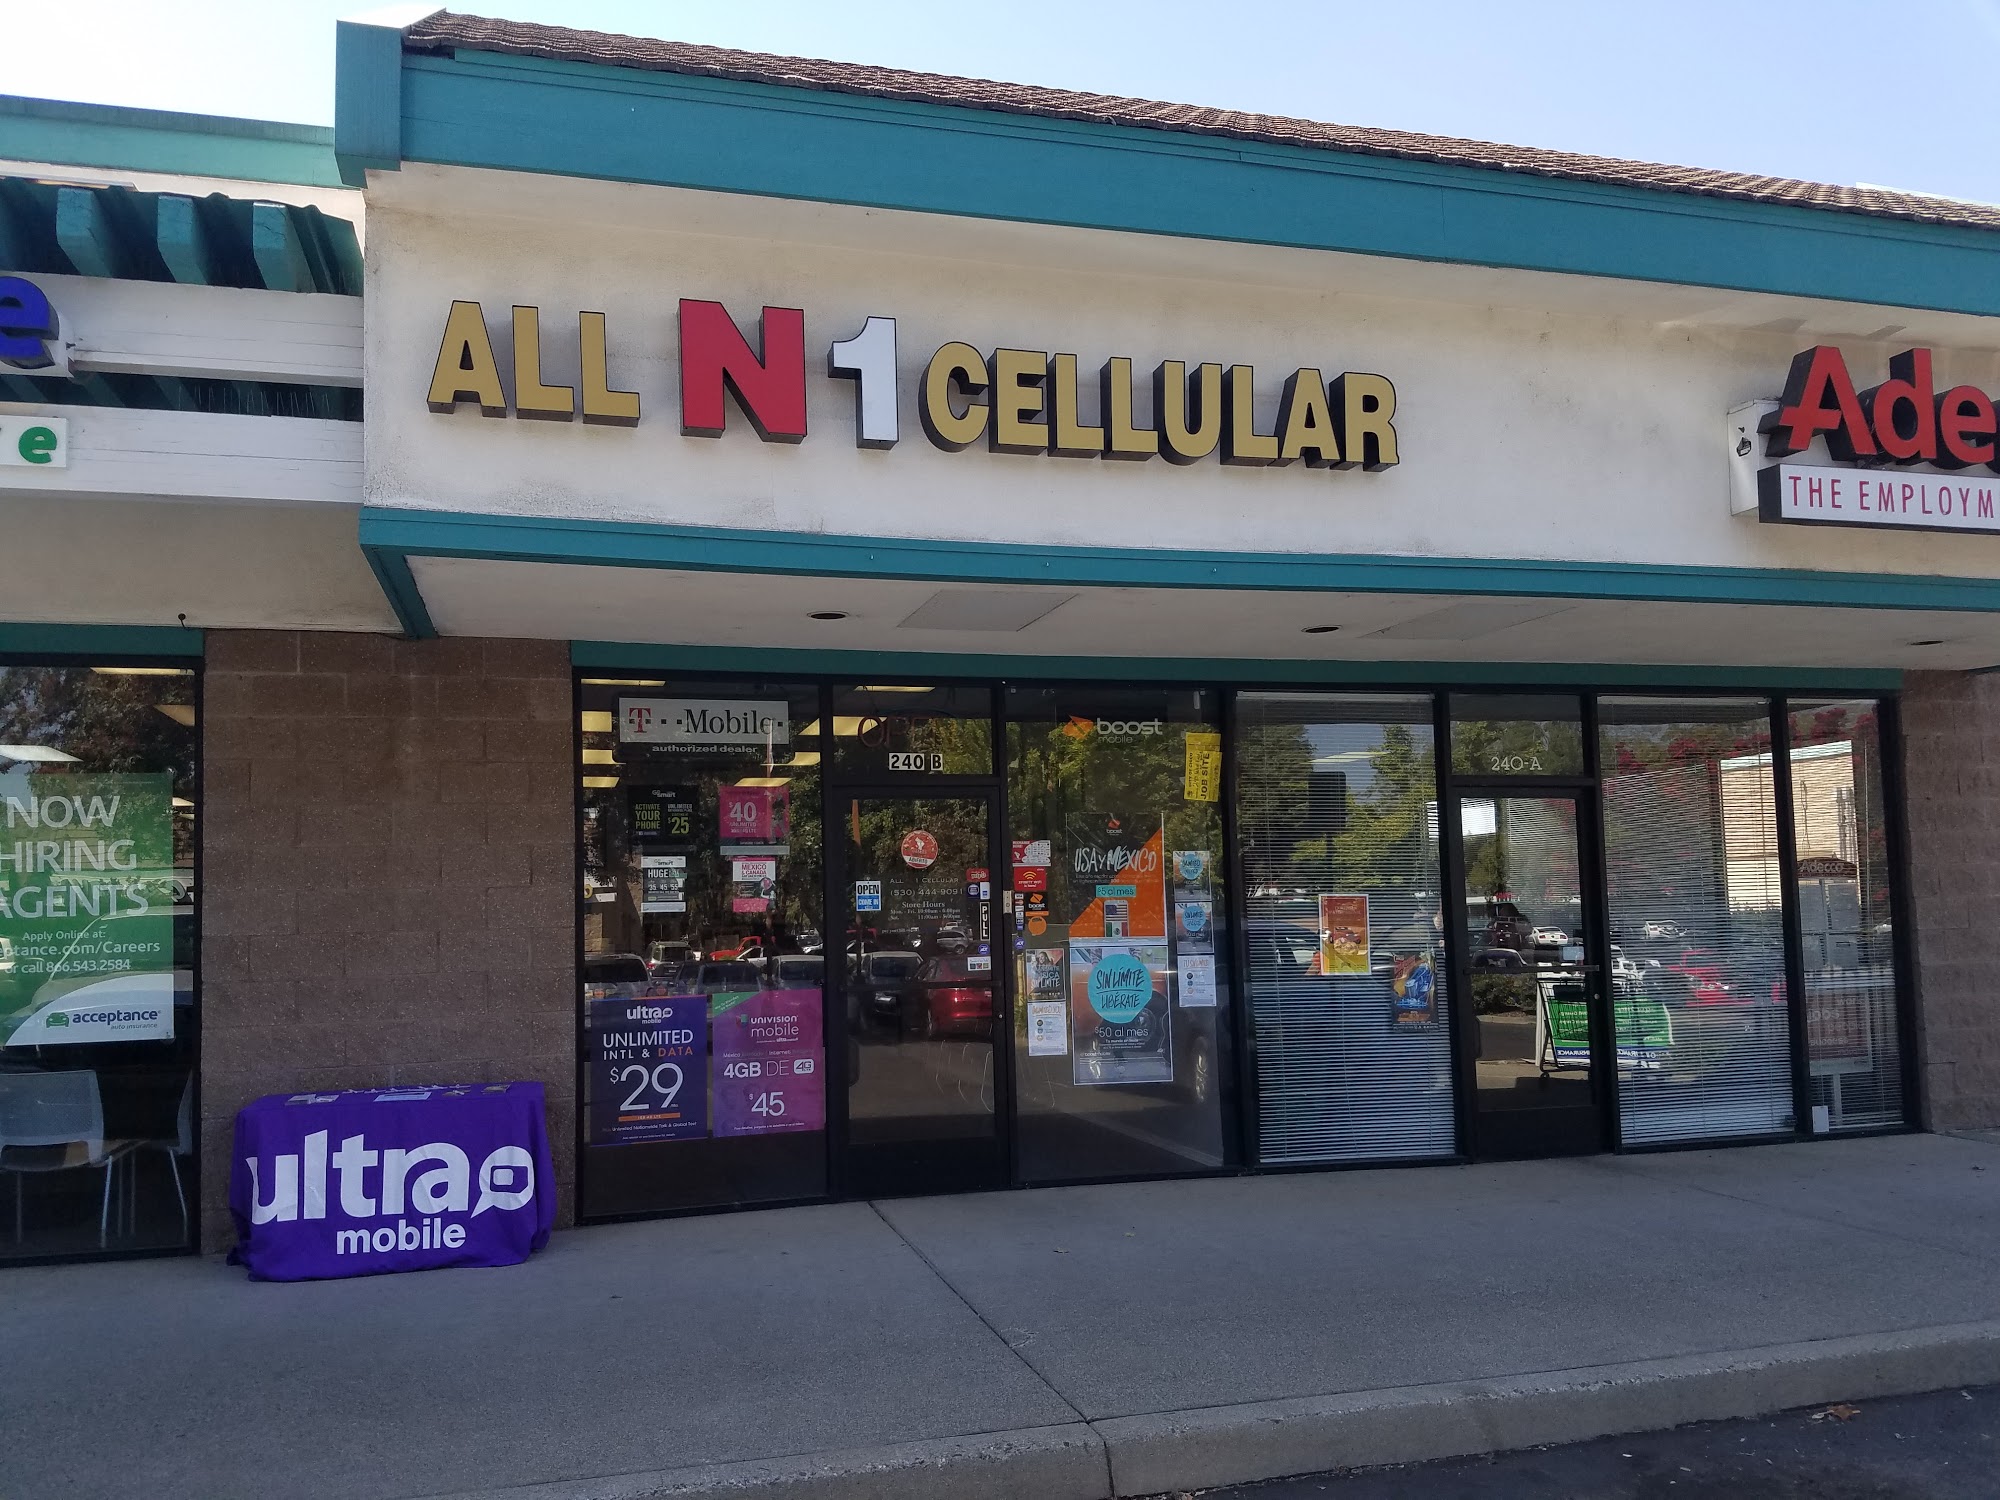 All N 1 Cellular